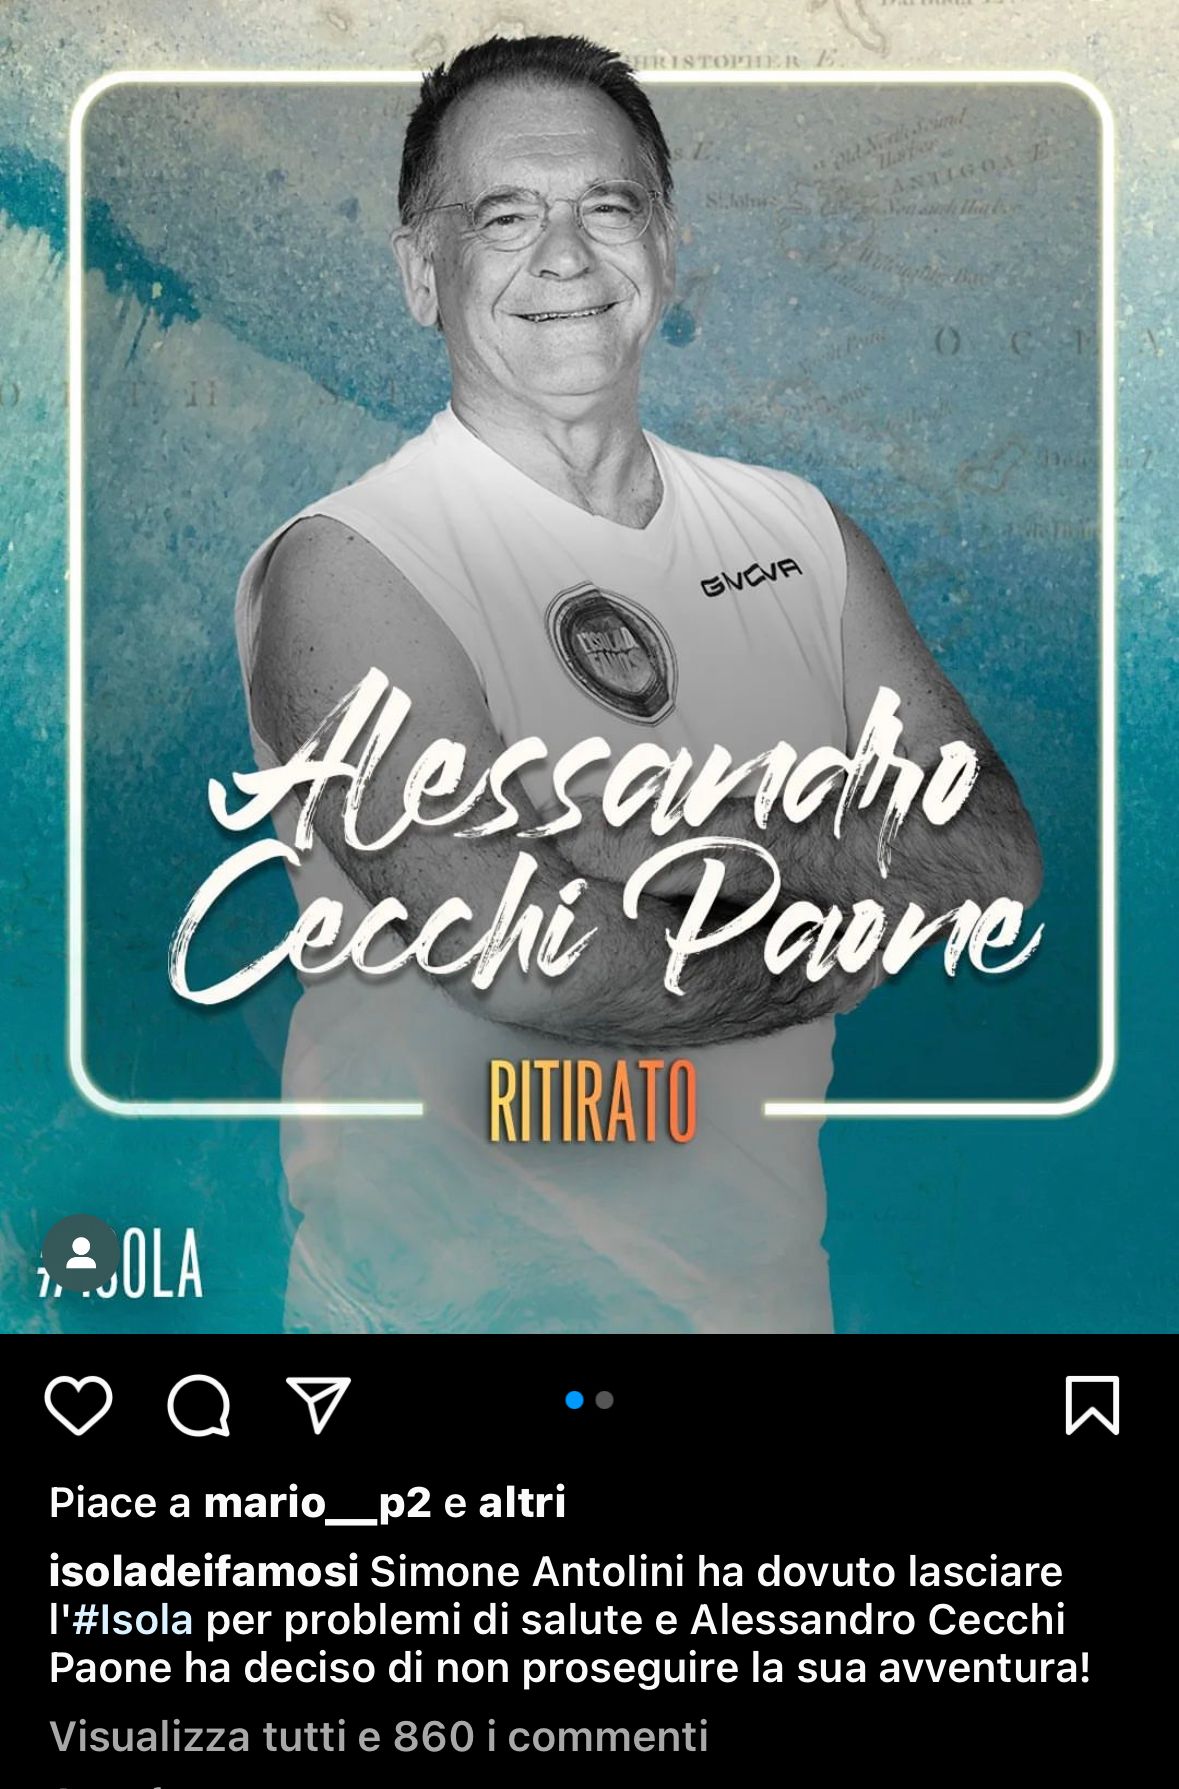 Alessandro Cecchi Paone si ritira dall'isola, questo il post pubblicato da poco dalla pagina ufficiale del reality.